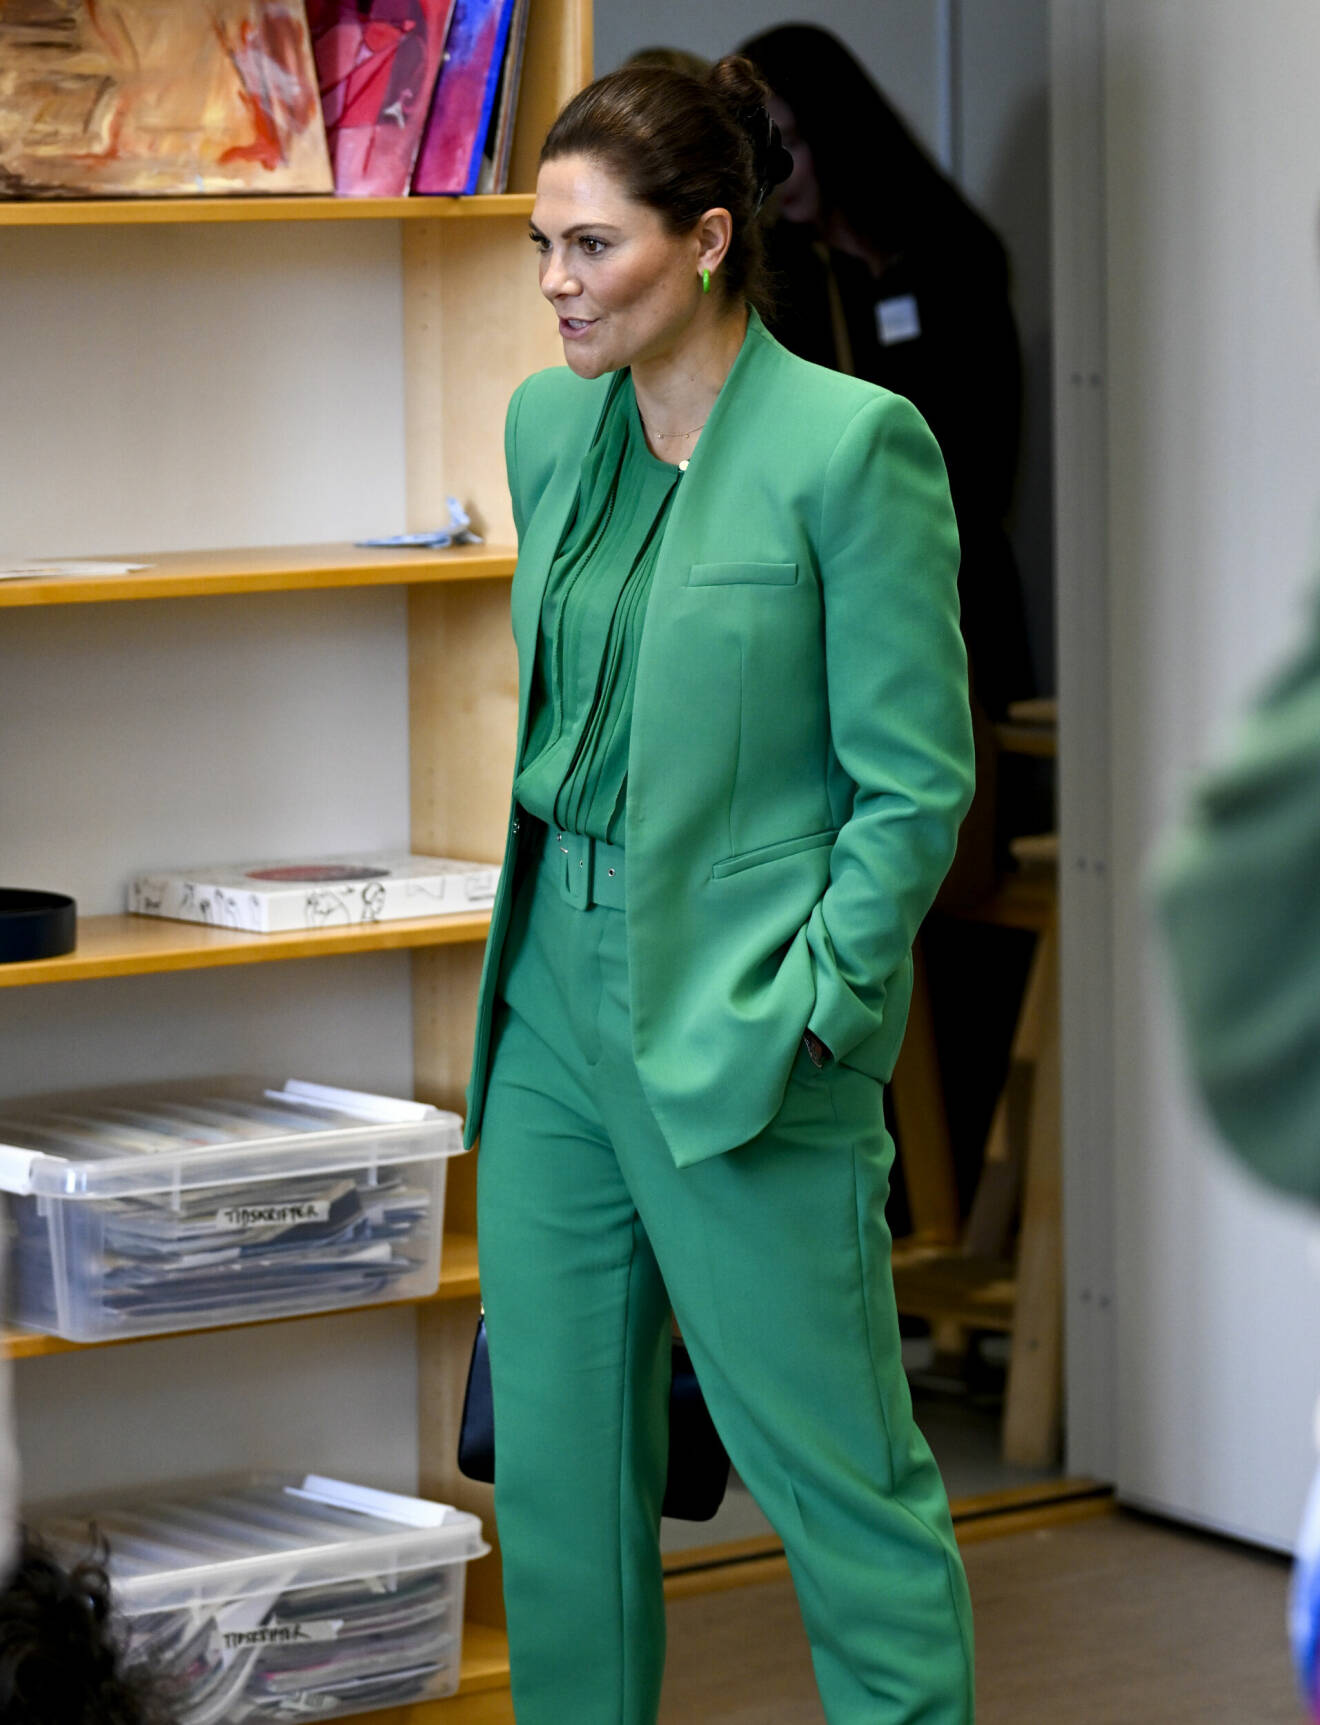 Kronprinsessan i en elegant grön klädsel.